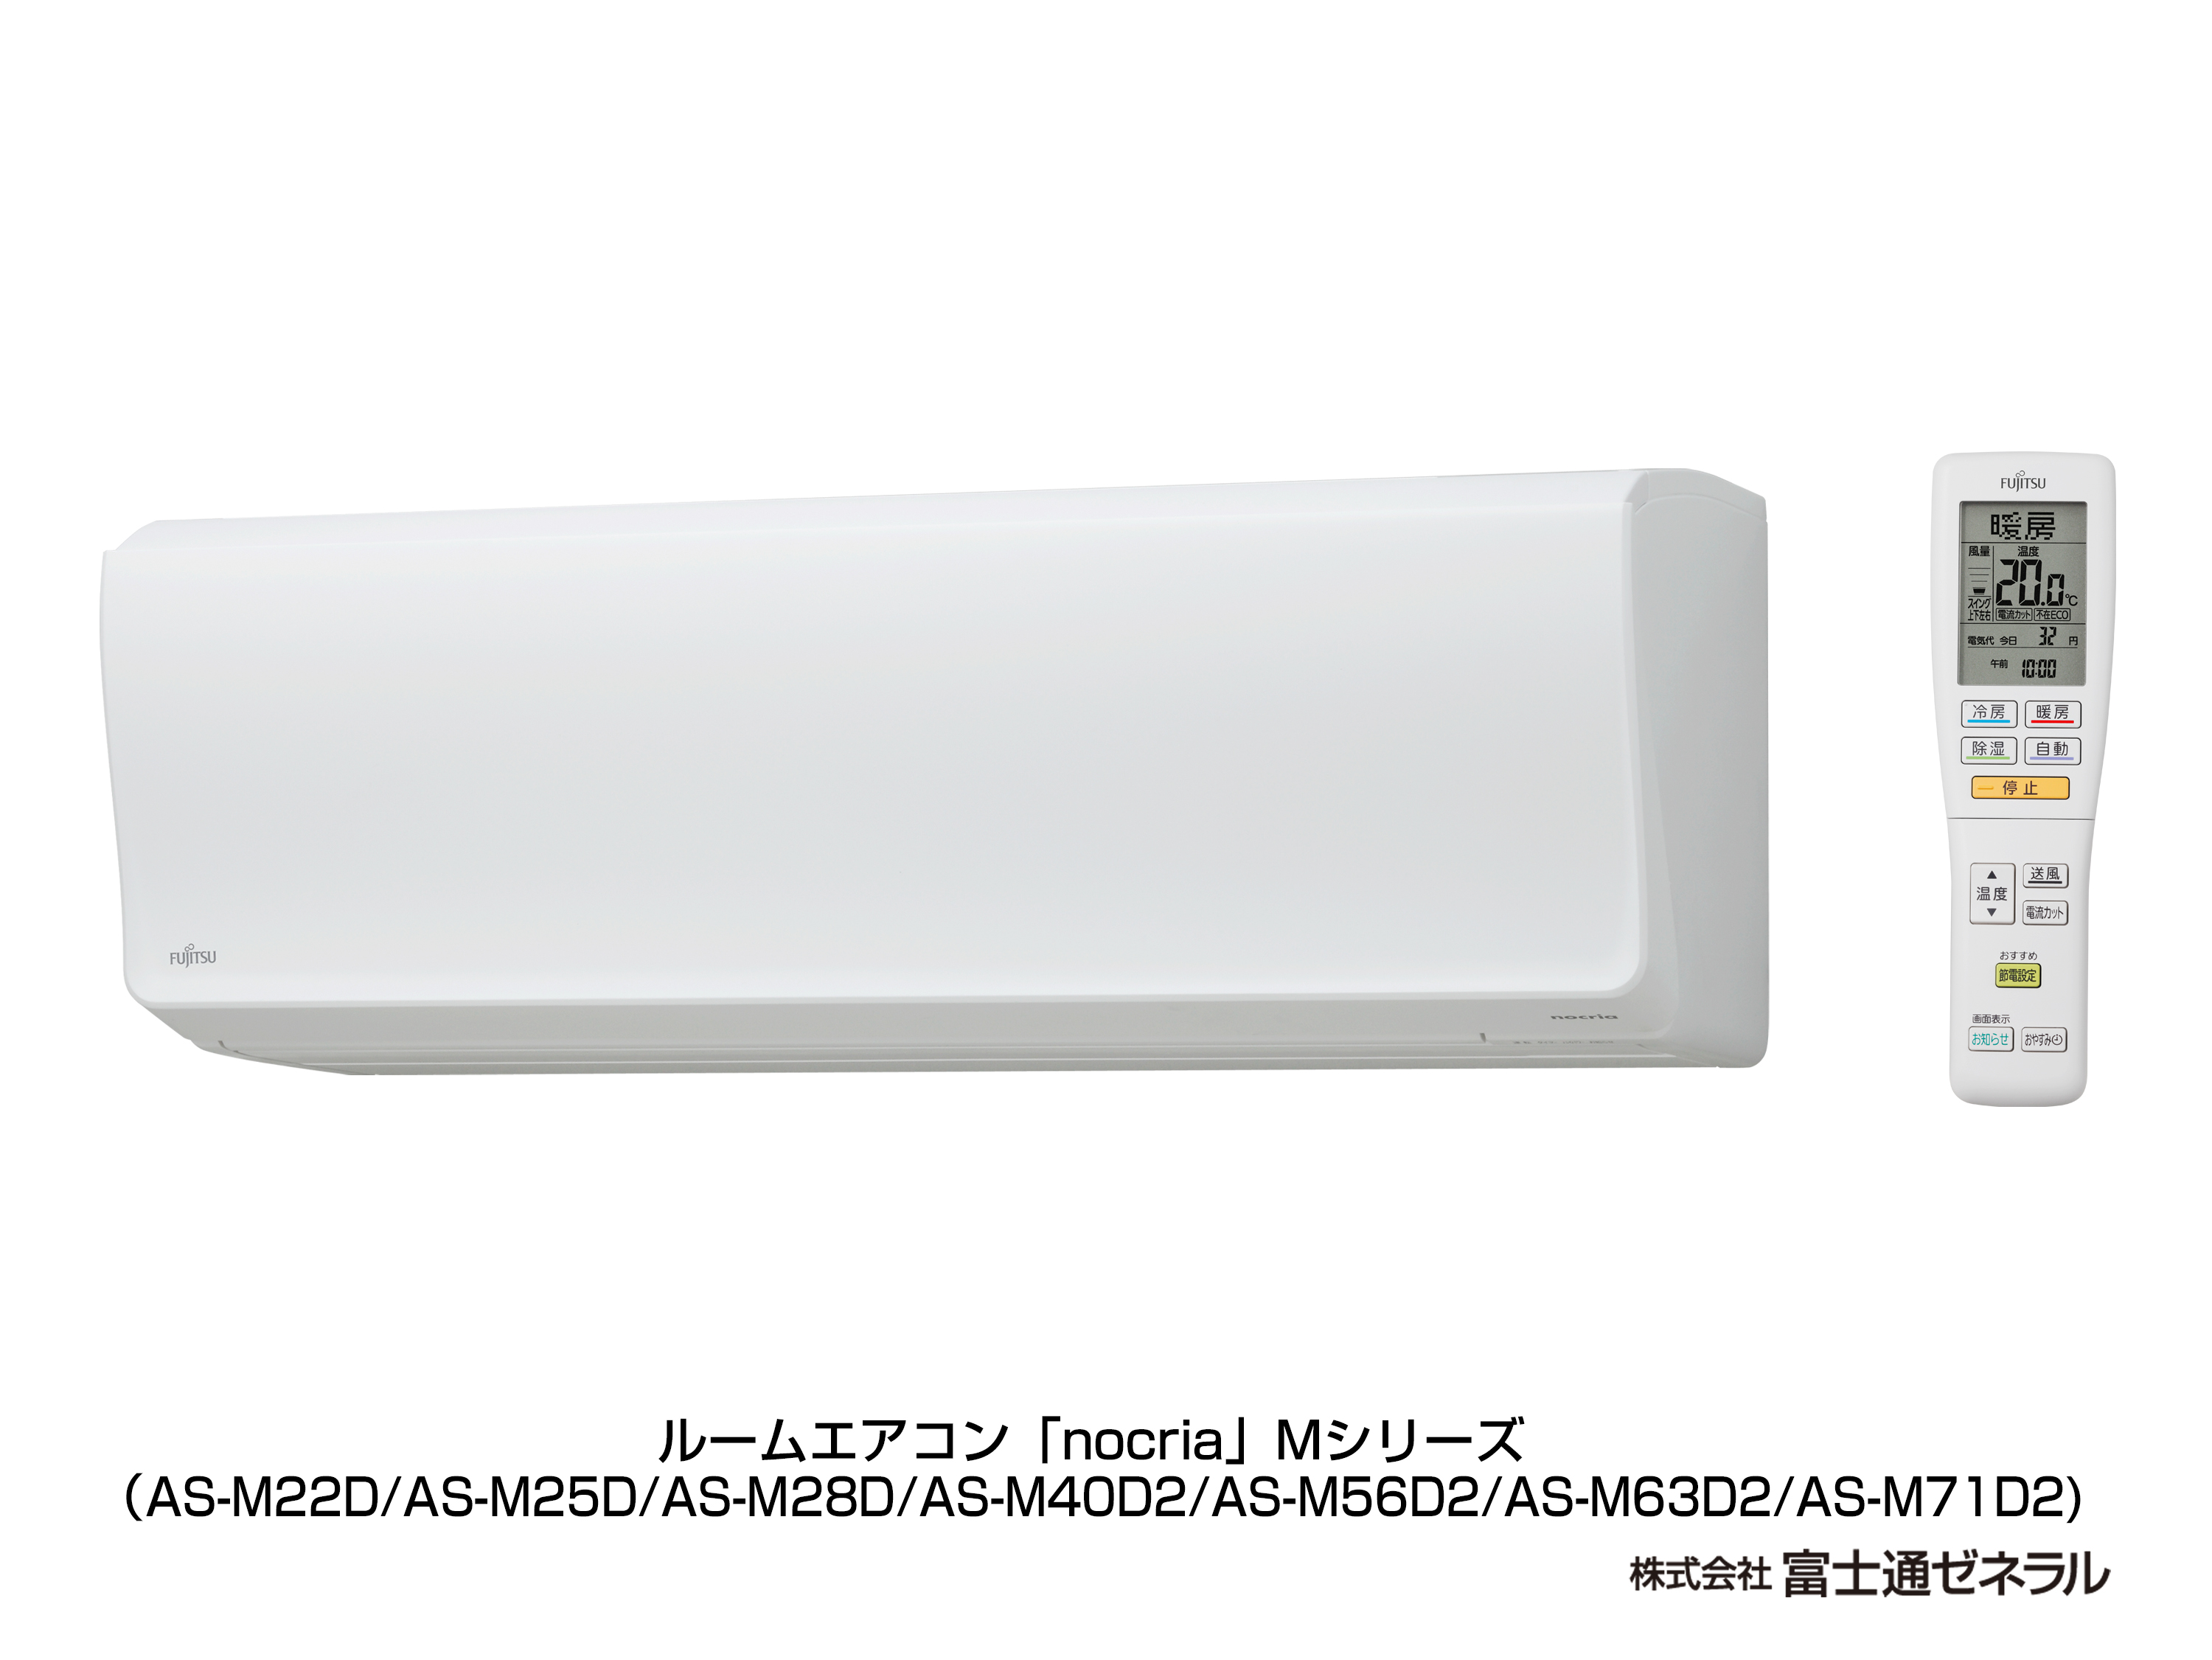 冷暖房/空調 エアコン エアコン : AS-M22D（2014年度「ノクリア」Mシリーズ） - 富士通 